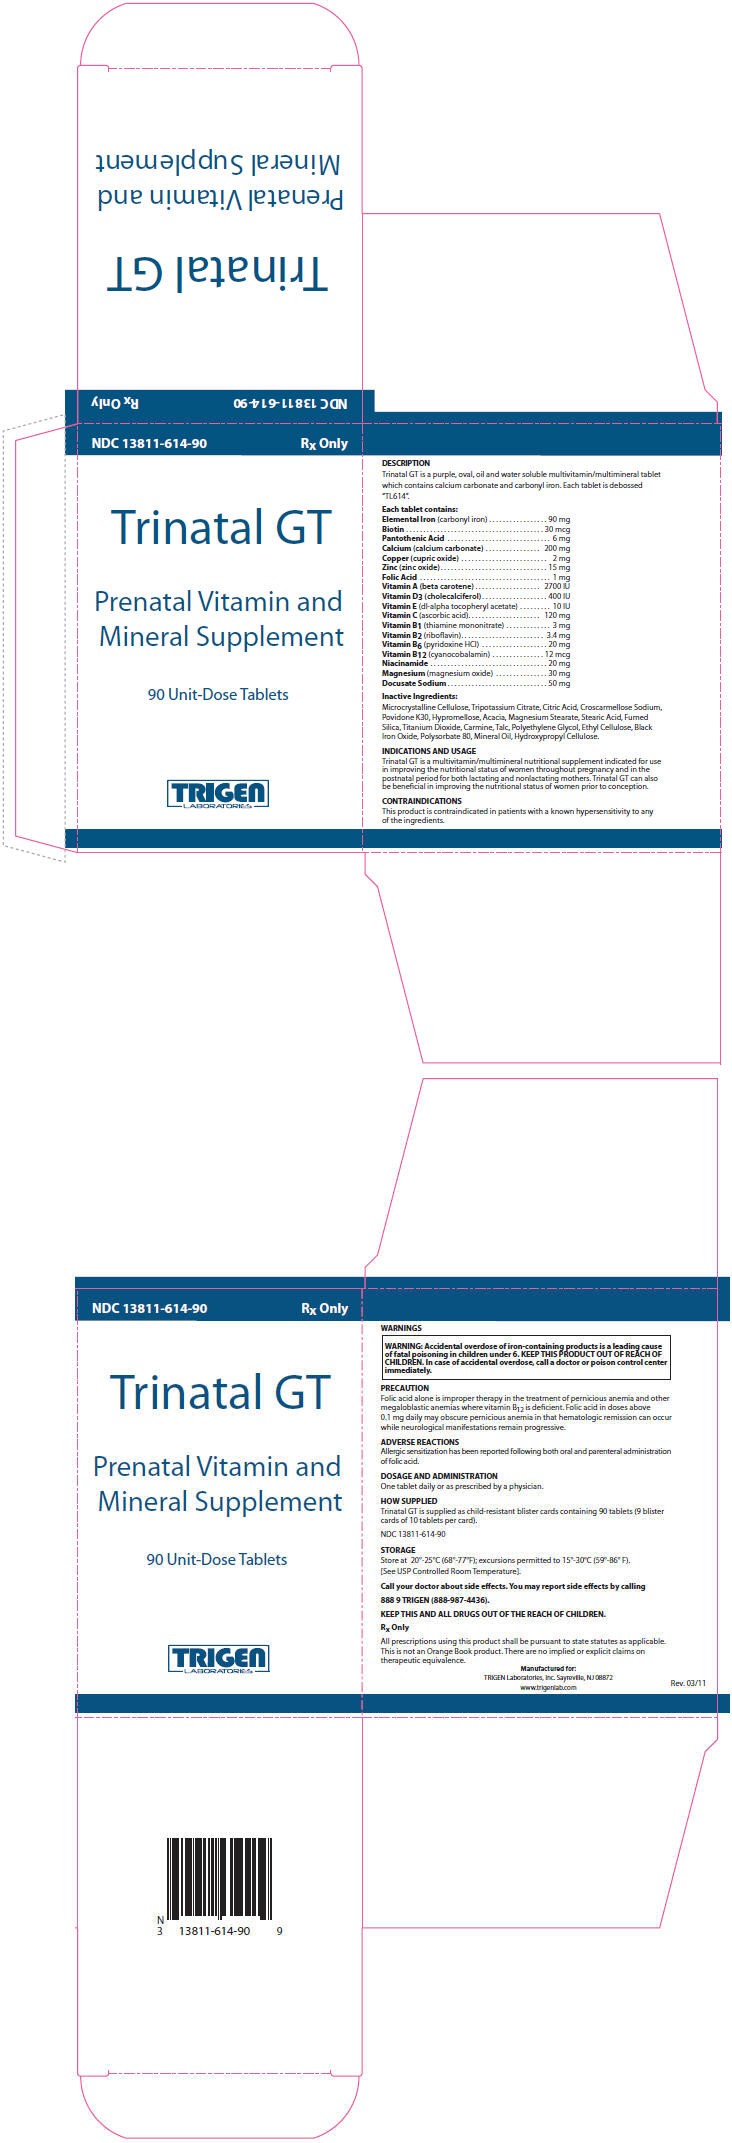 Trinatal GT